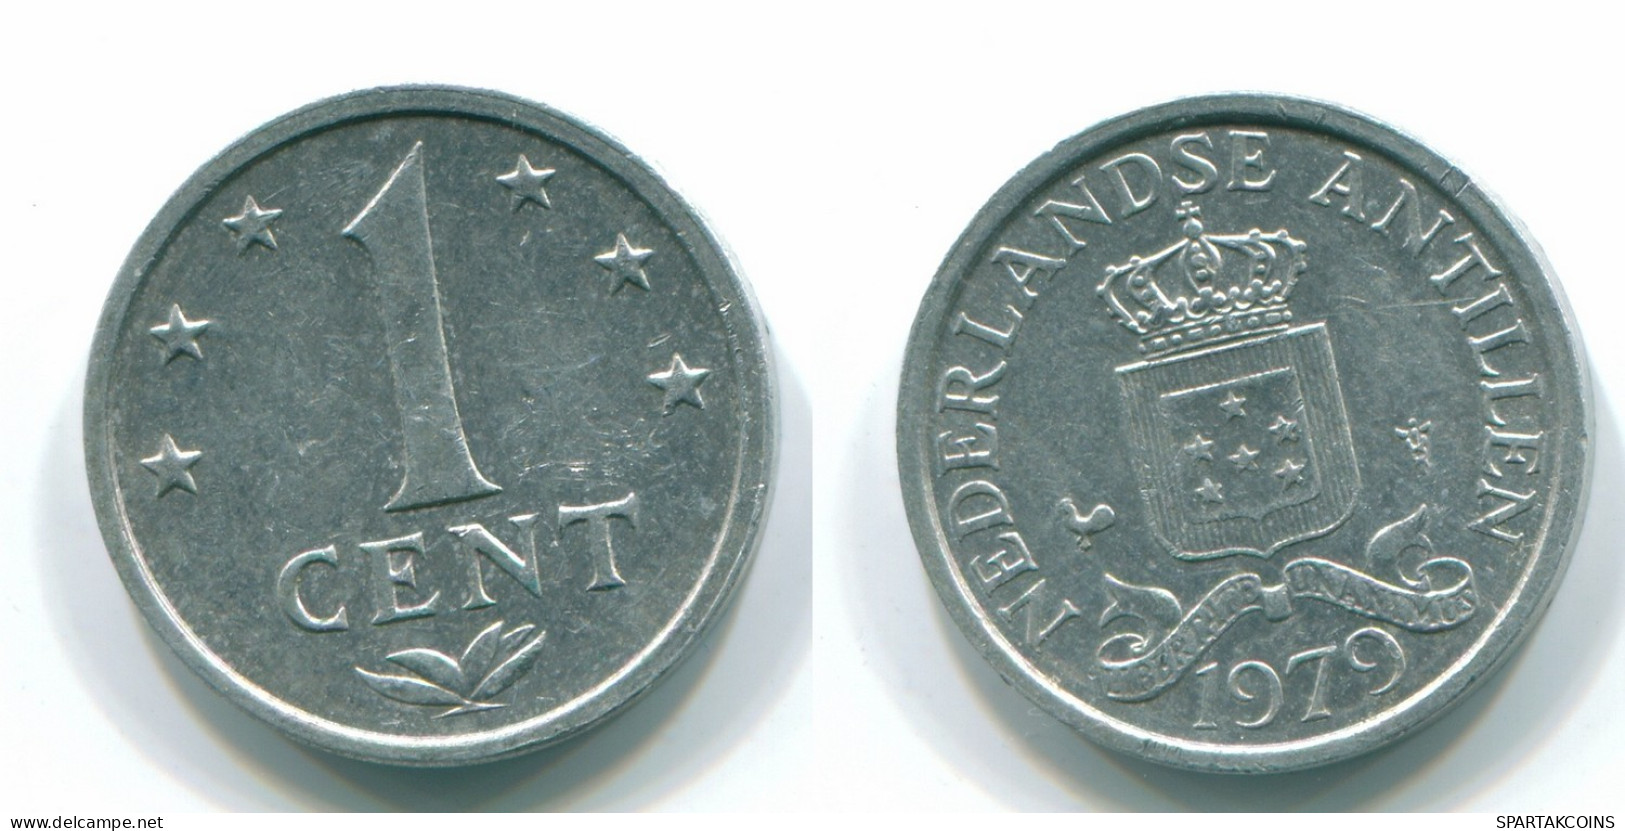 1 CENT 1979 NIEDERLÄNDISCHE ANTILLEN Aluminium Koloniale Münze #S11168.D.A - Netherlands Antilles